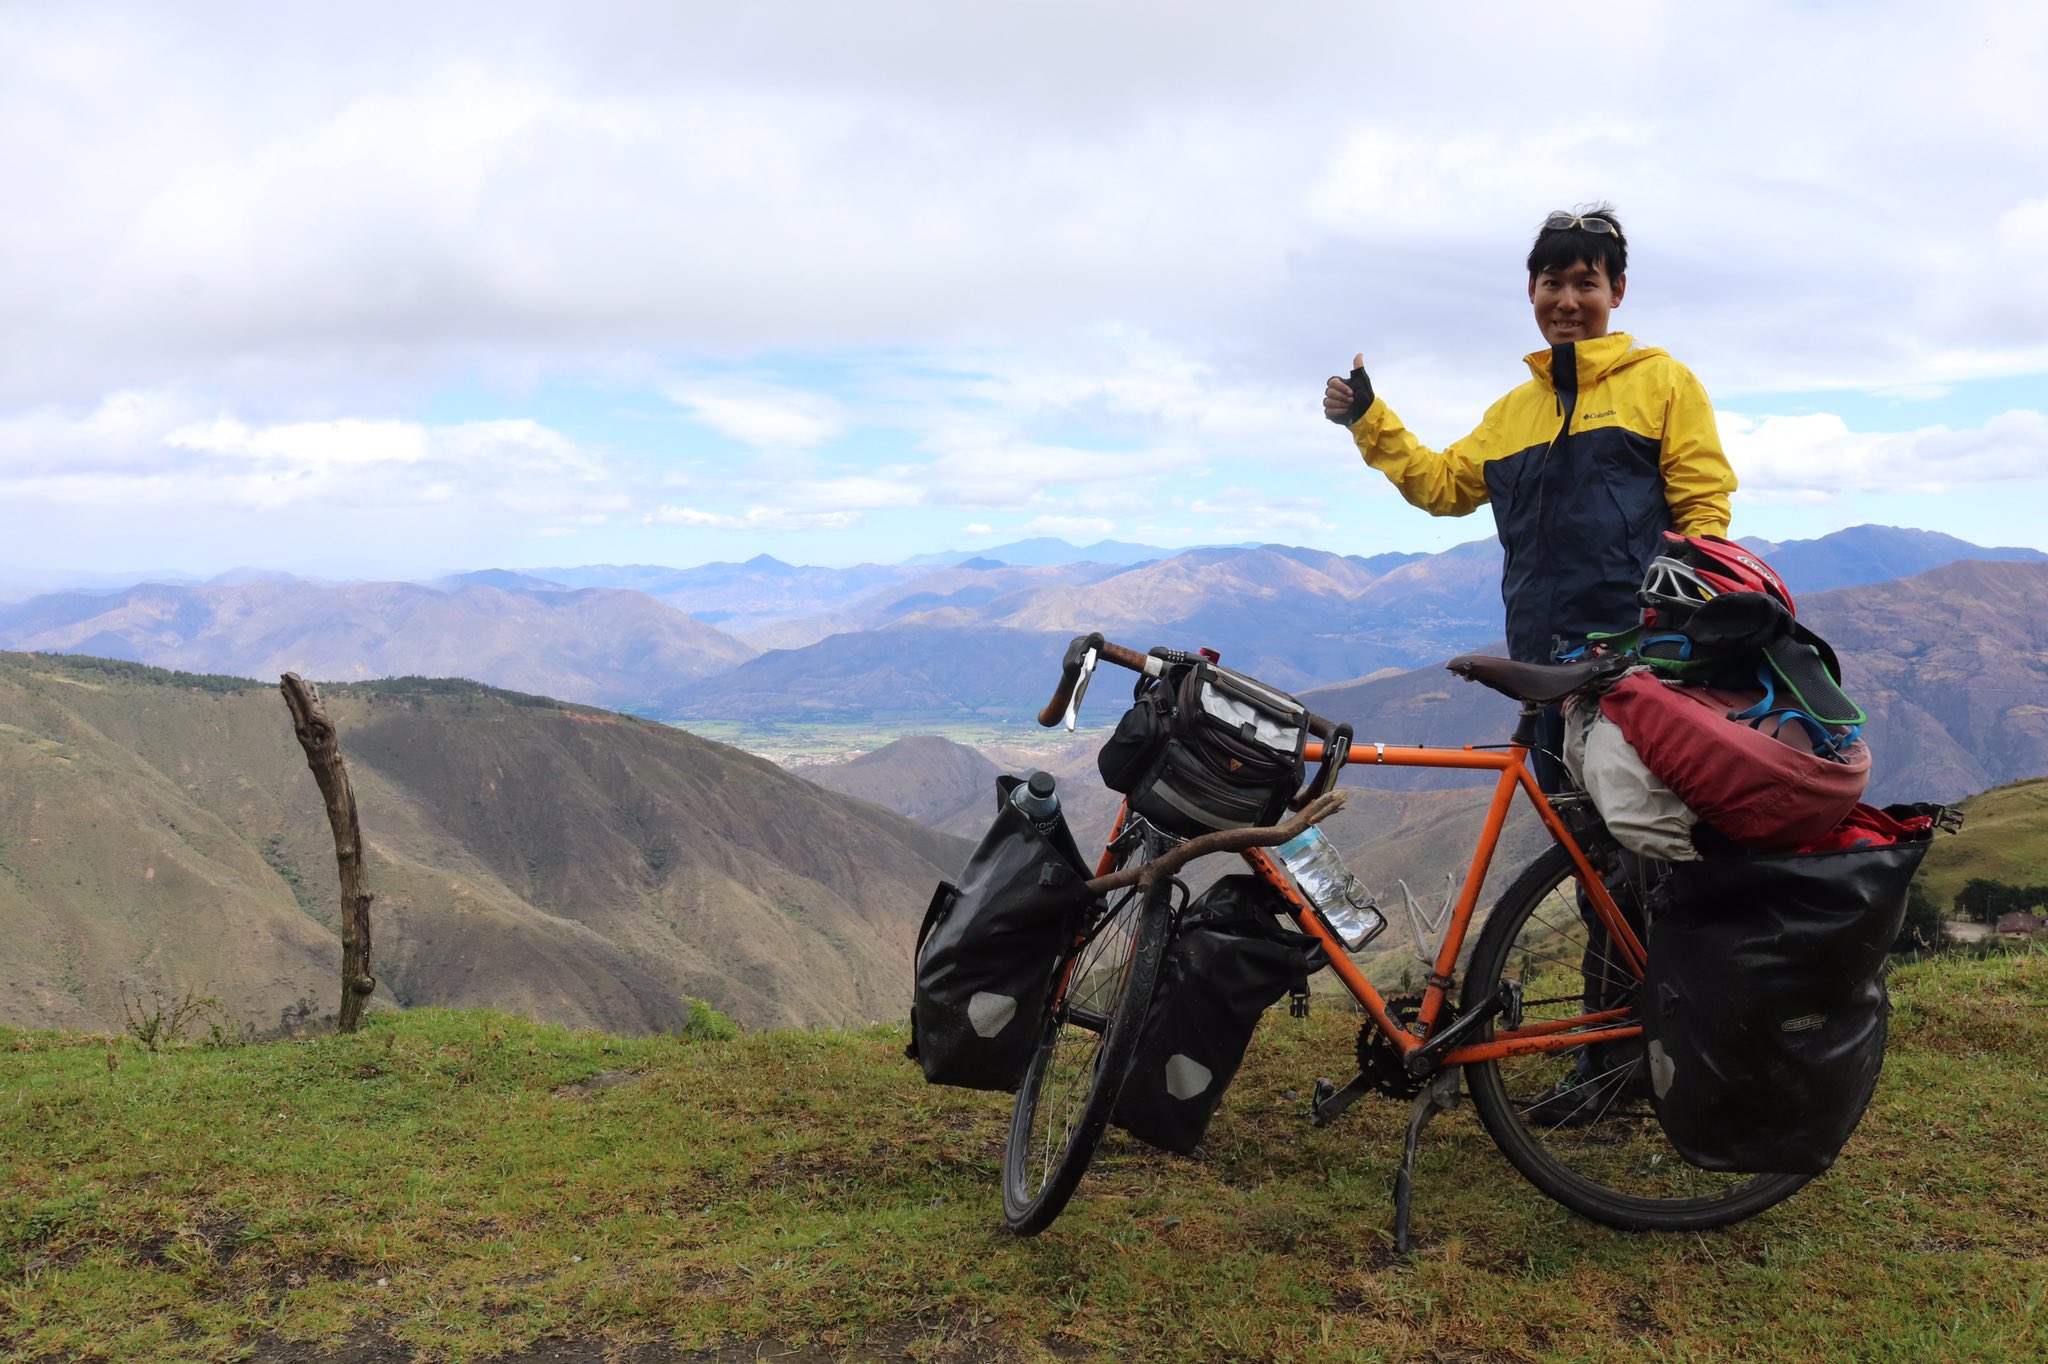 ペルーで邦人男性事故死 自転車で旅行中